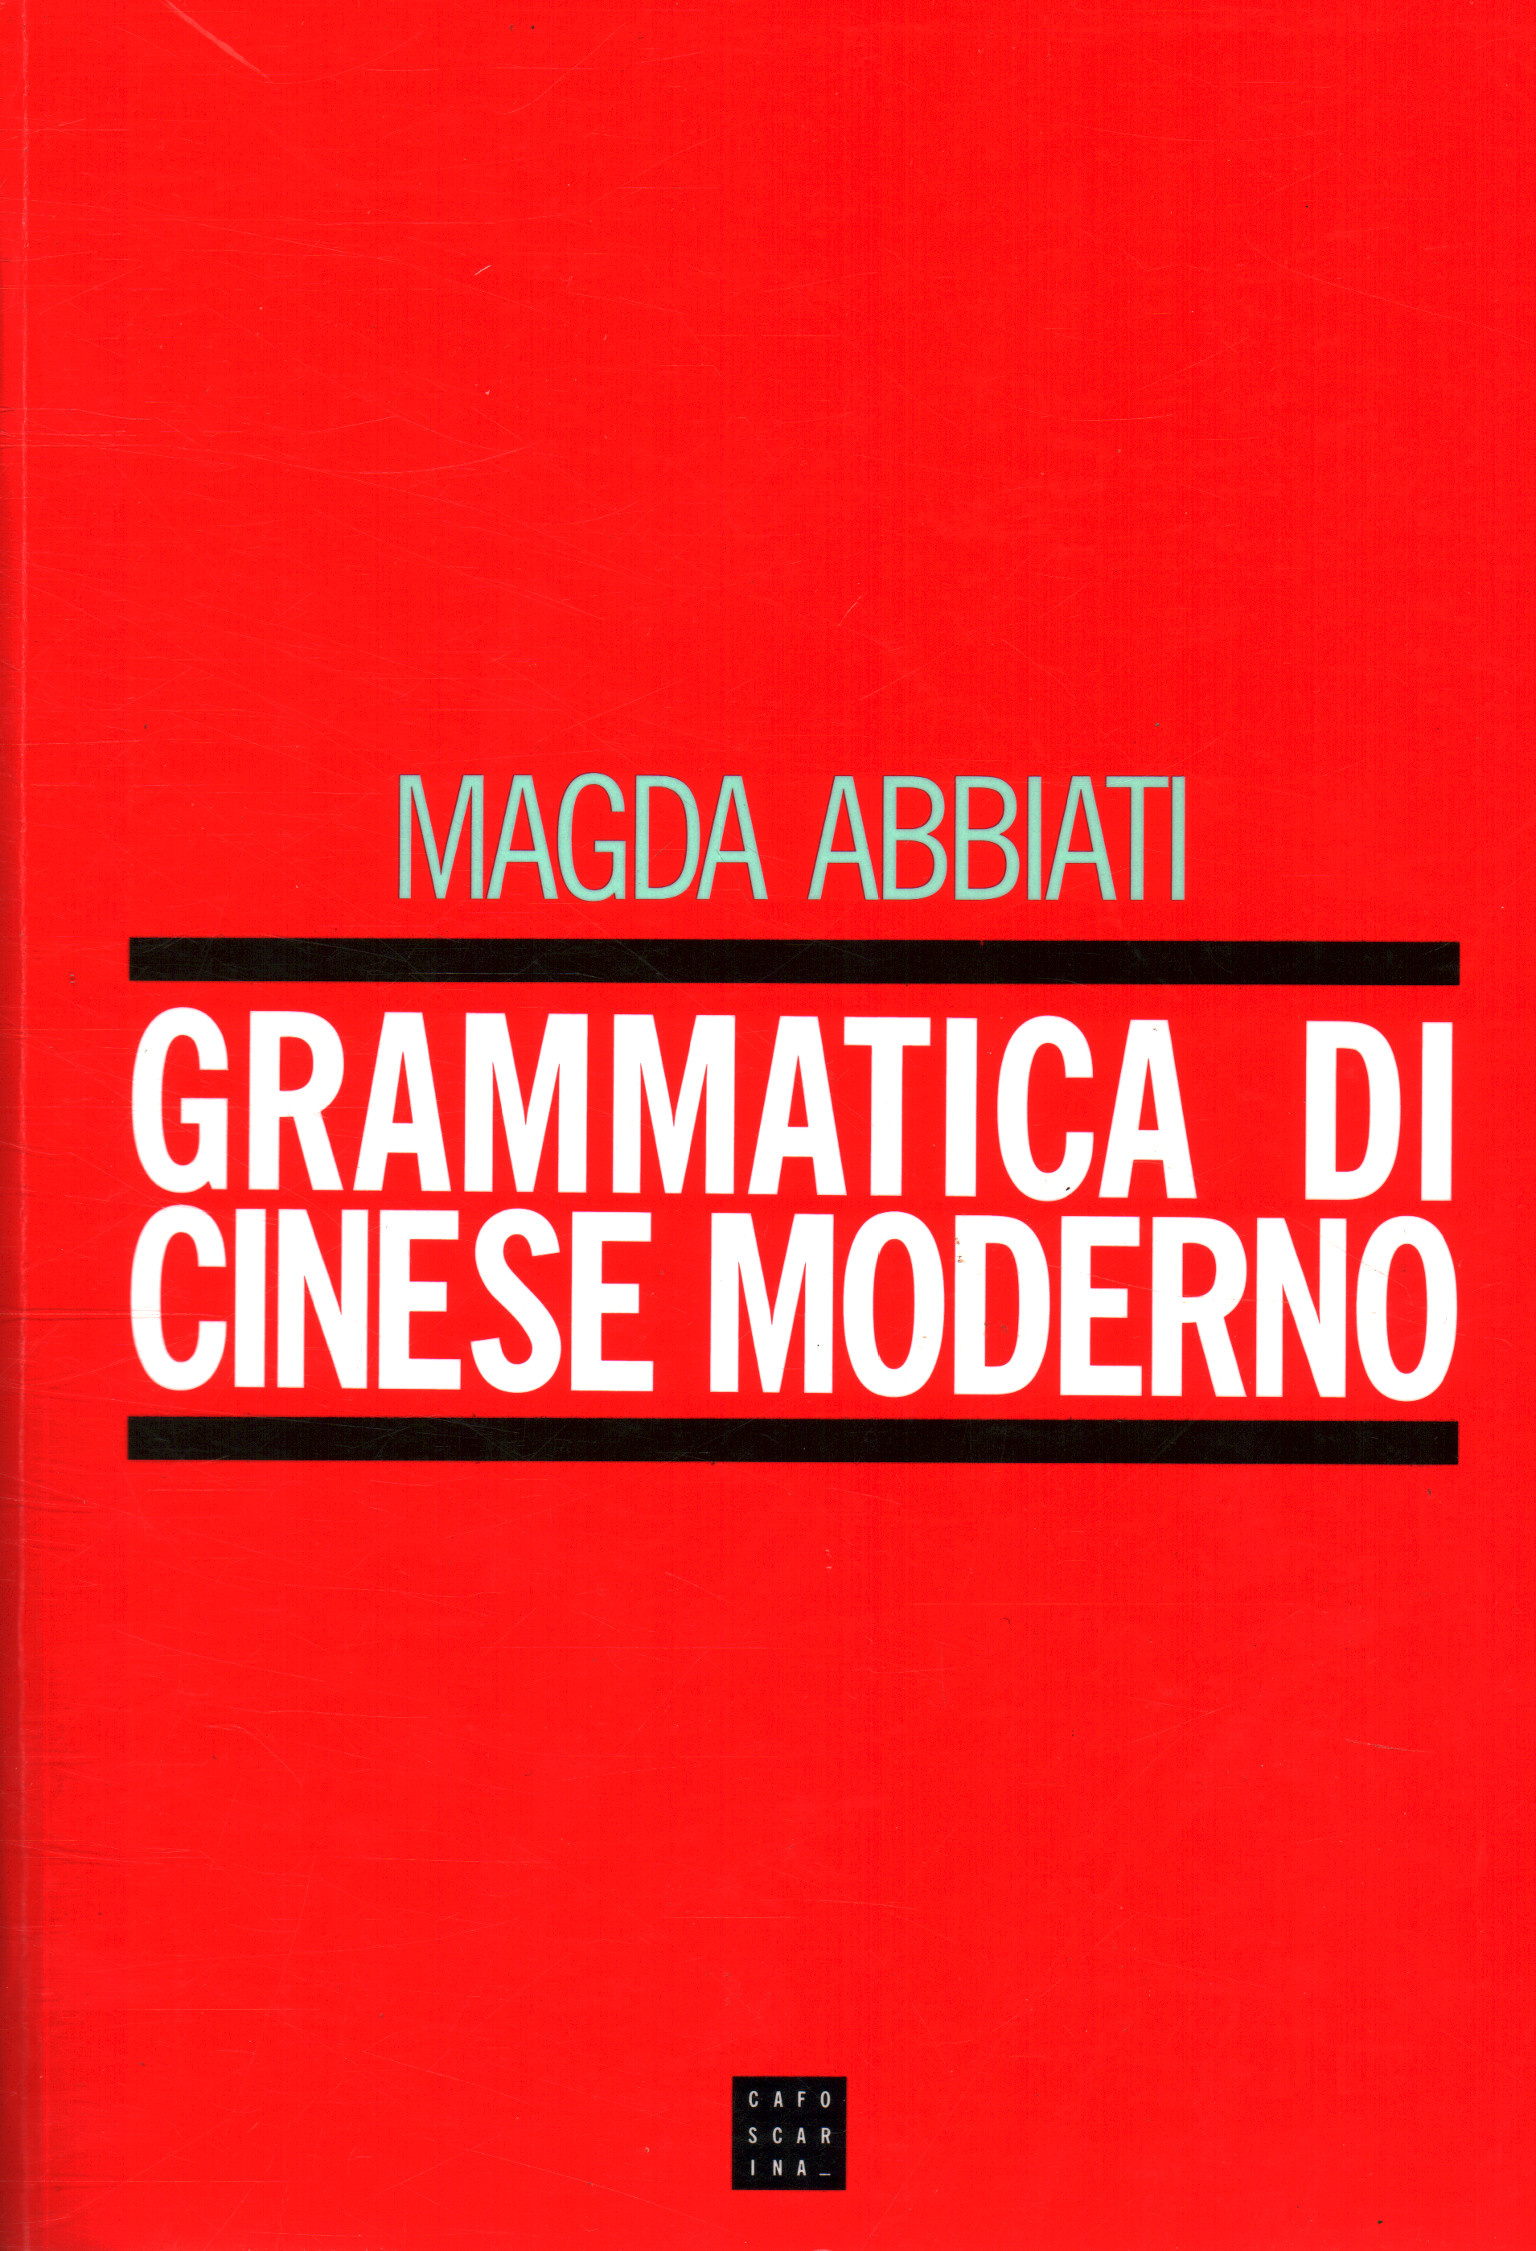 Grammatica di cinese moderno, Magda Abbiati